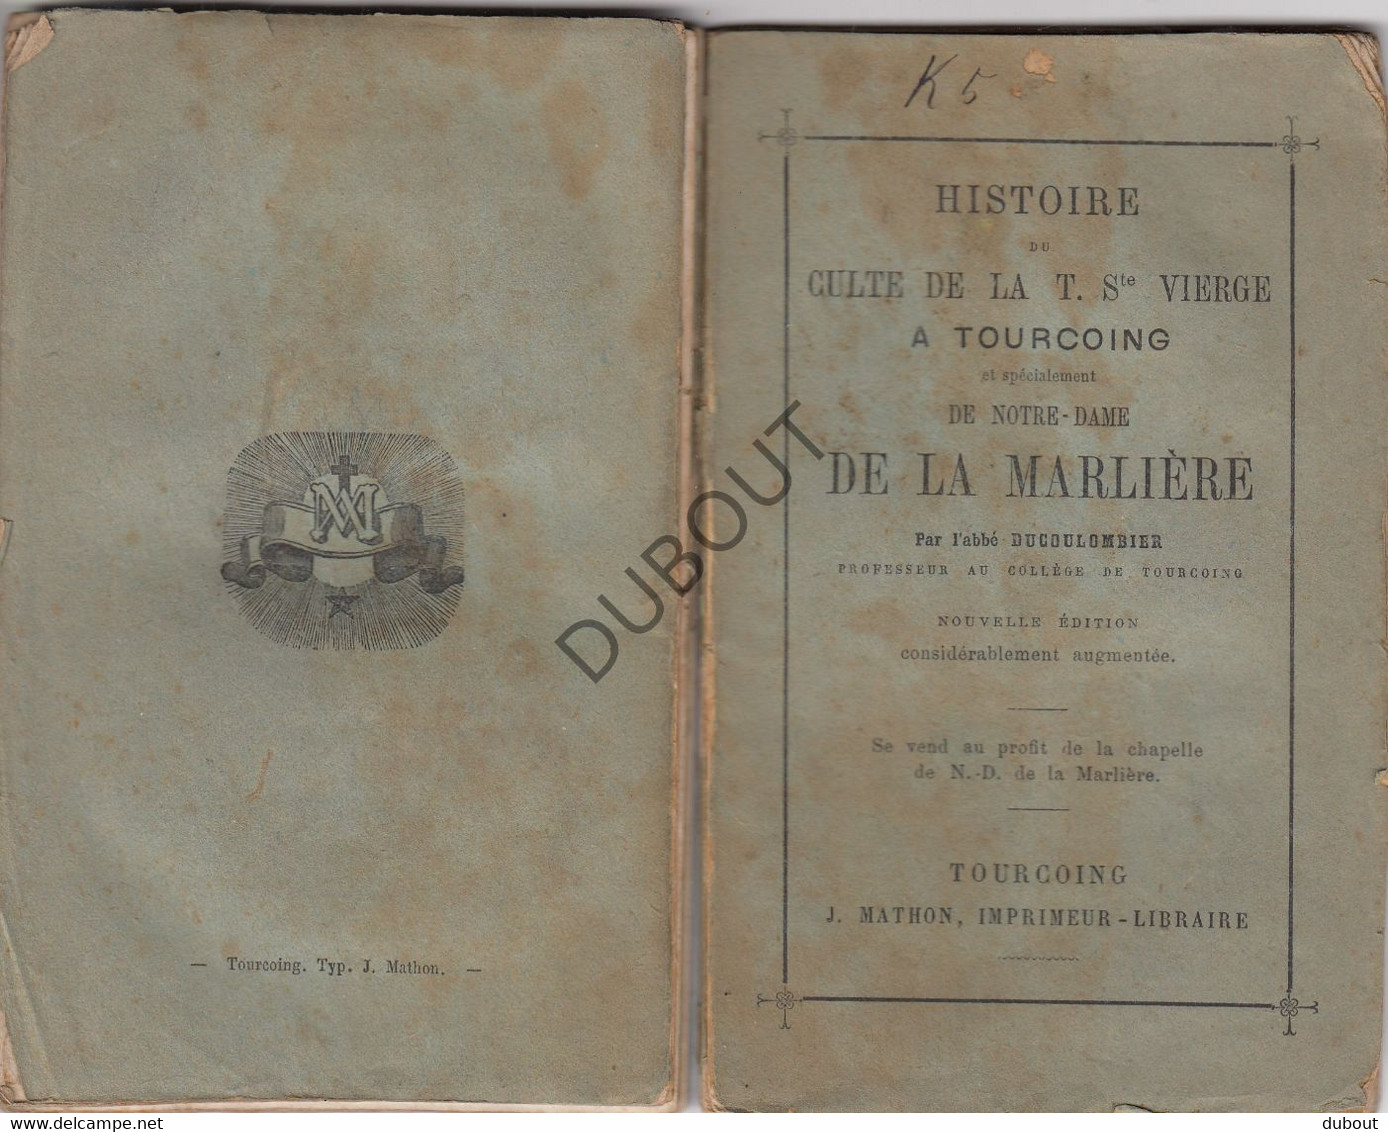 TOURCOING Histoire Du Culte De La T Ste Vierge- N-D De La Marlière - Ducoulombier, 1879, Impr. J. Mathon  (W8) - Anciens